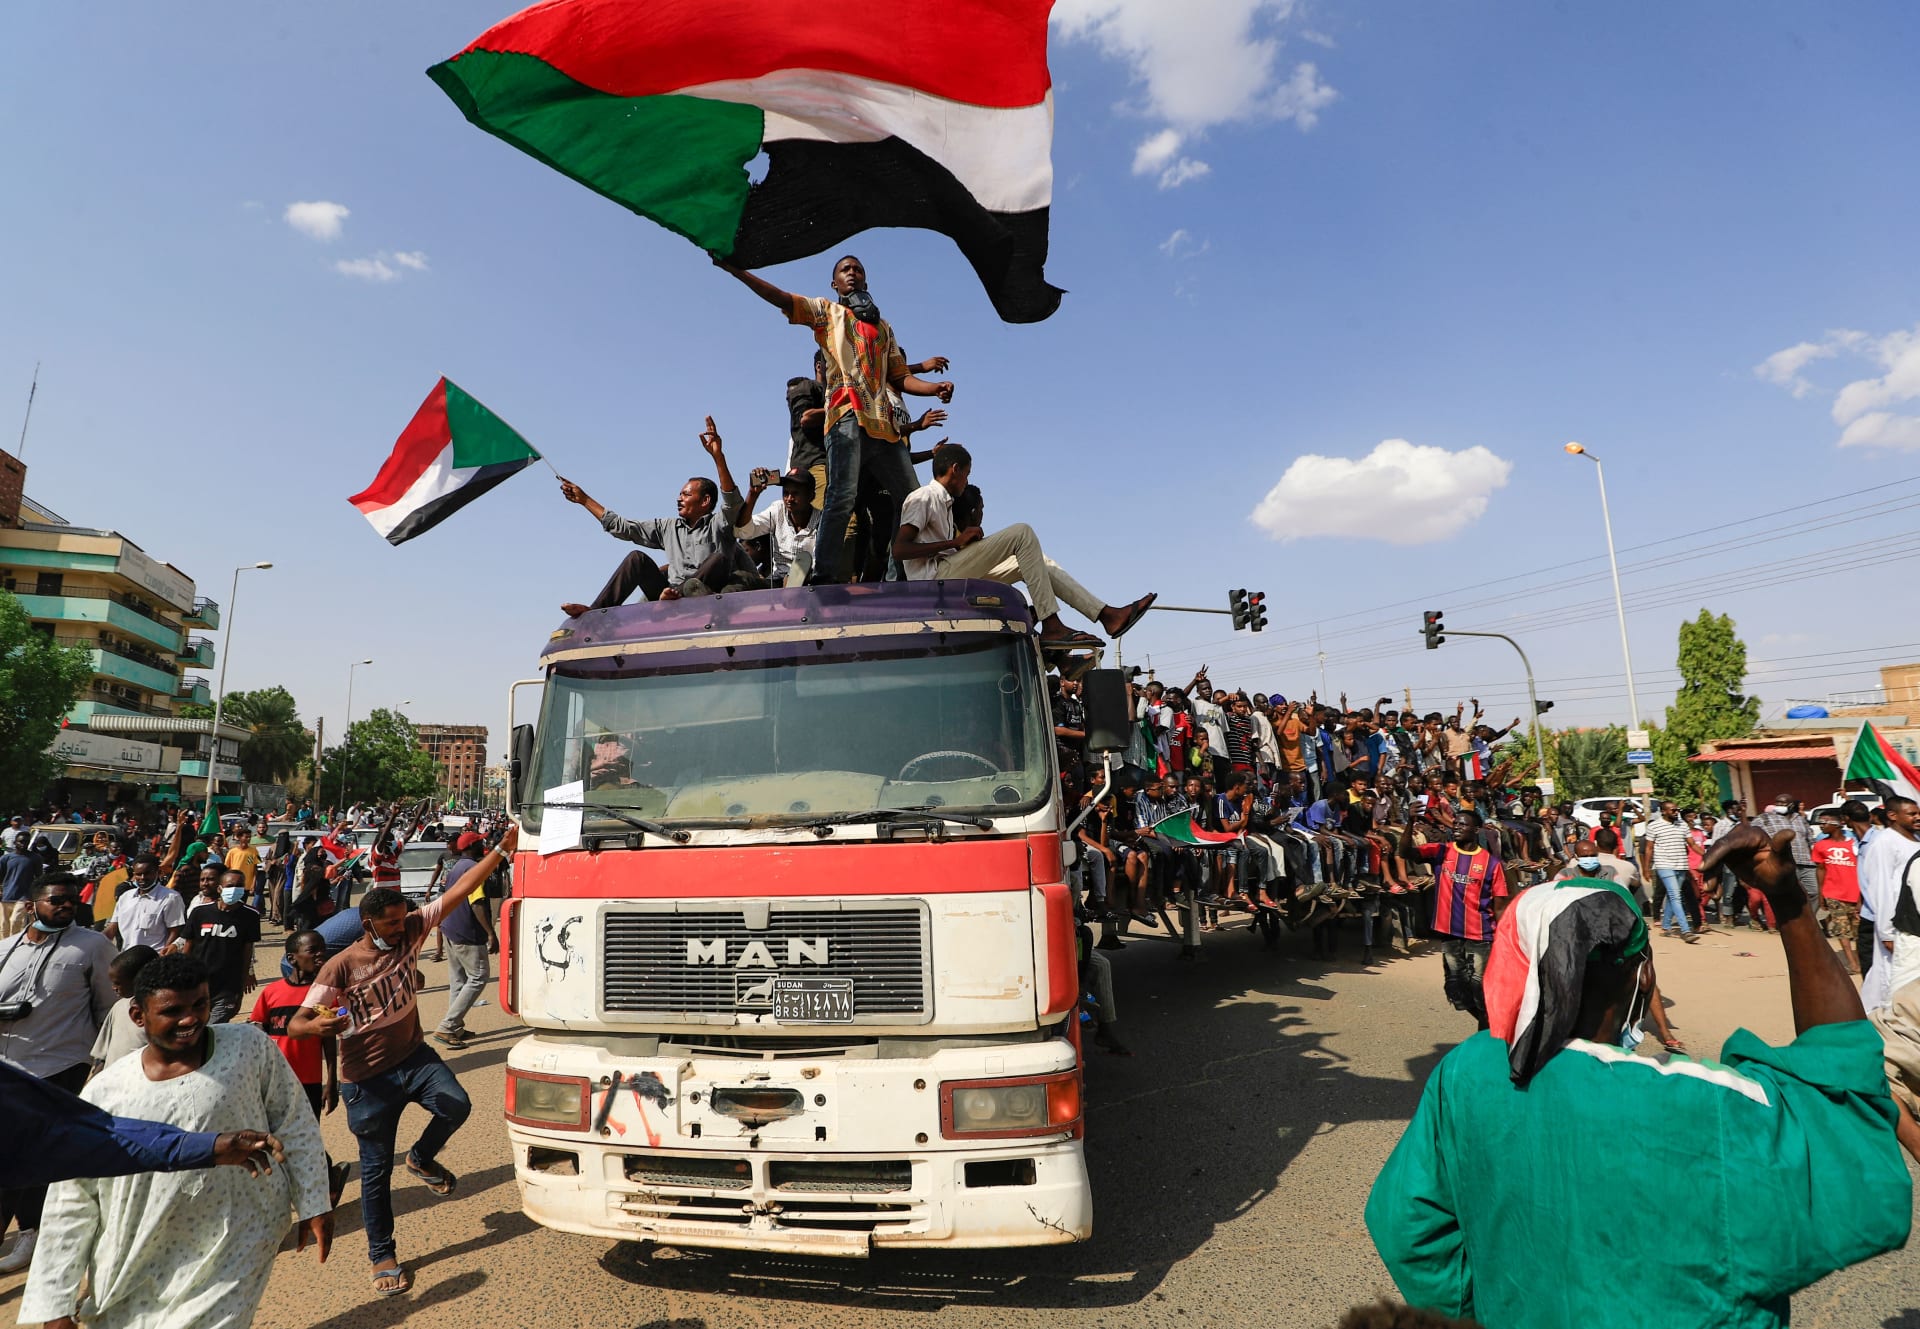 متظاهرون سودانيون إلى شوارع العاصمة الخرطوم للمطالبة بانتقال الحكومة إلى الحكم المدني، في 21 أكتوبر / تشرين الأول 2021.